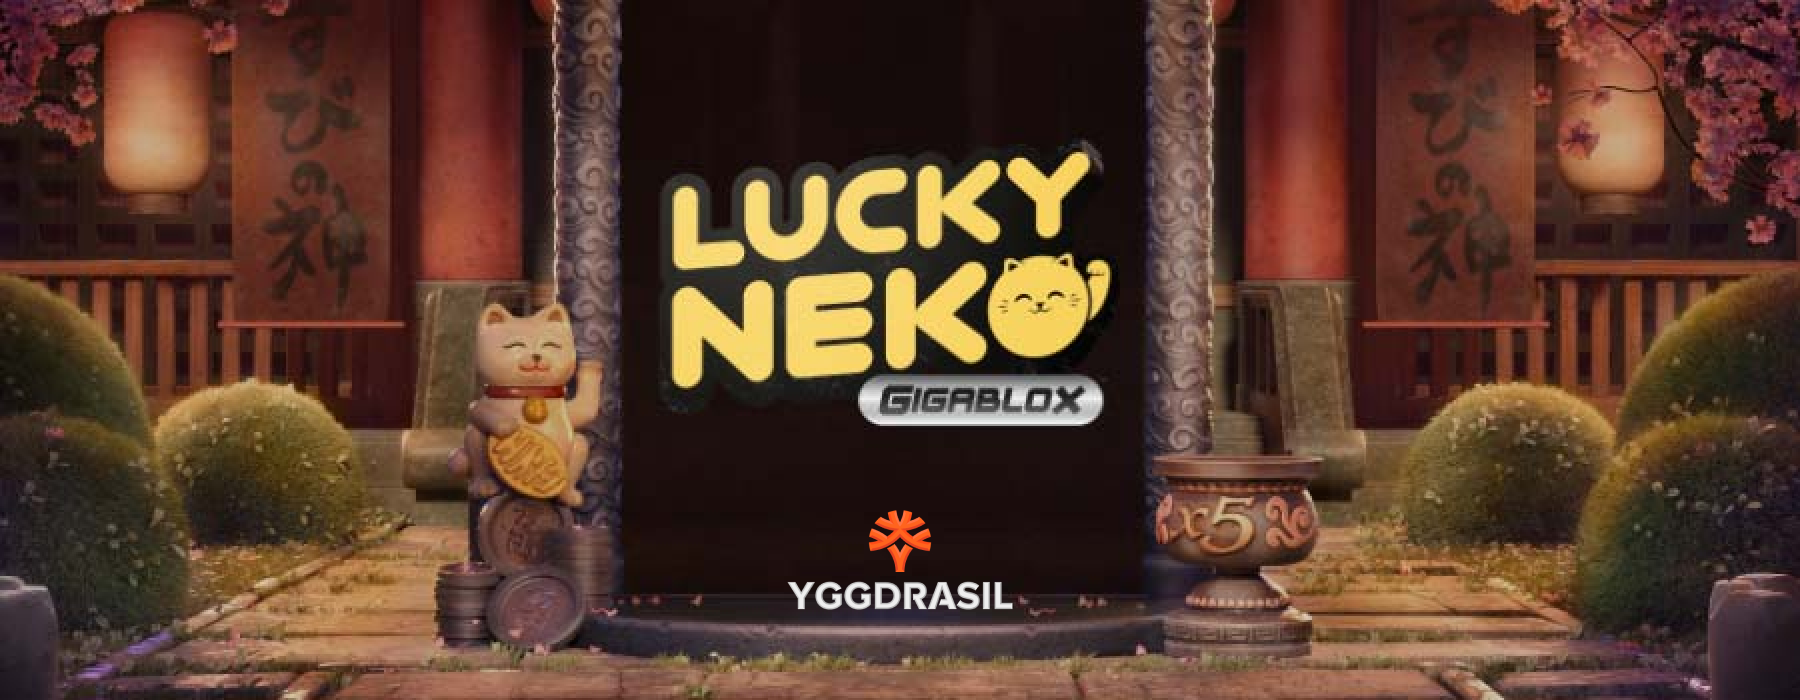 Lucky Neko Gigablox da Yggdrasil